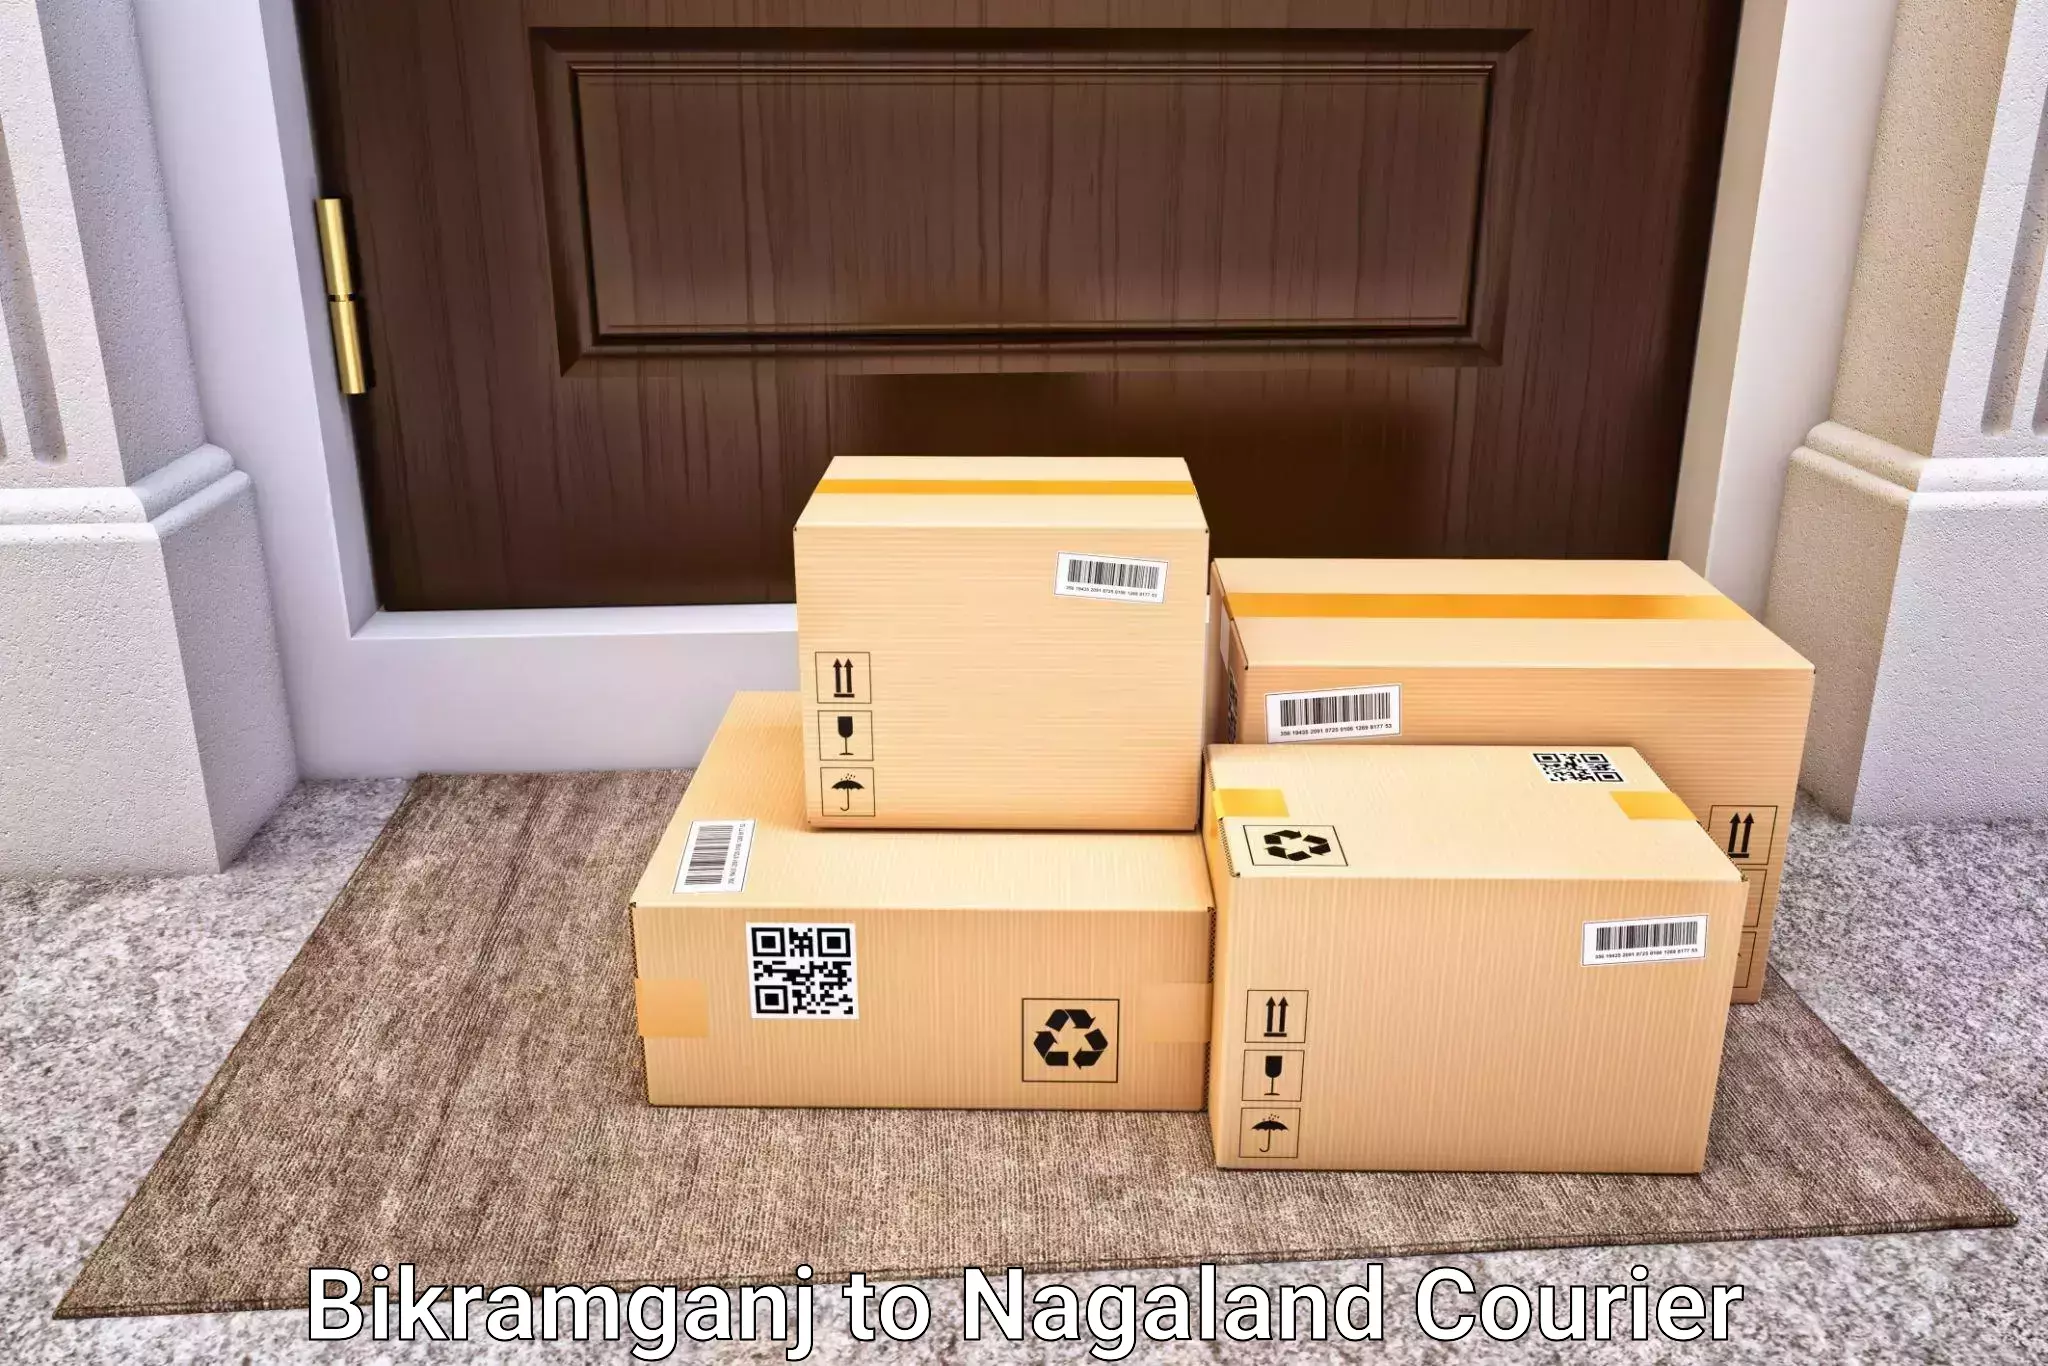 Hassle-free luggage shipping Bikramganj to NIT Nagaland